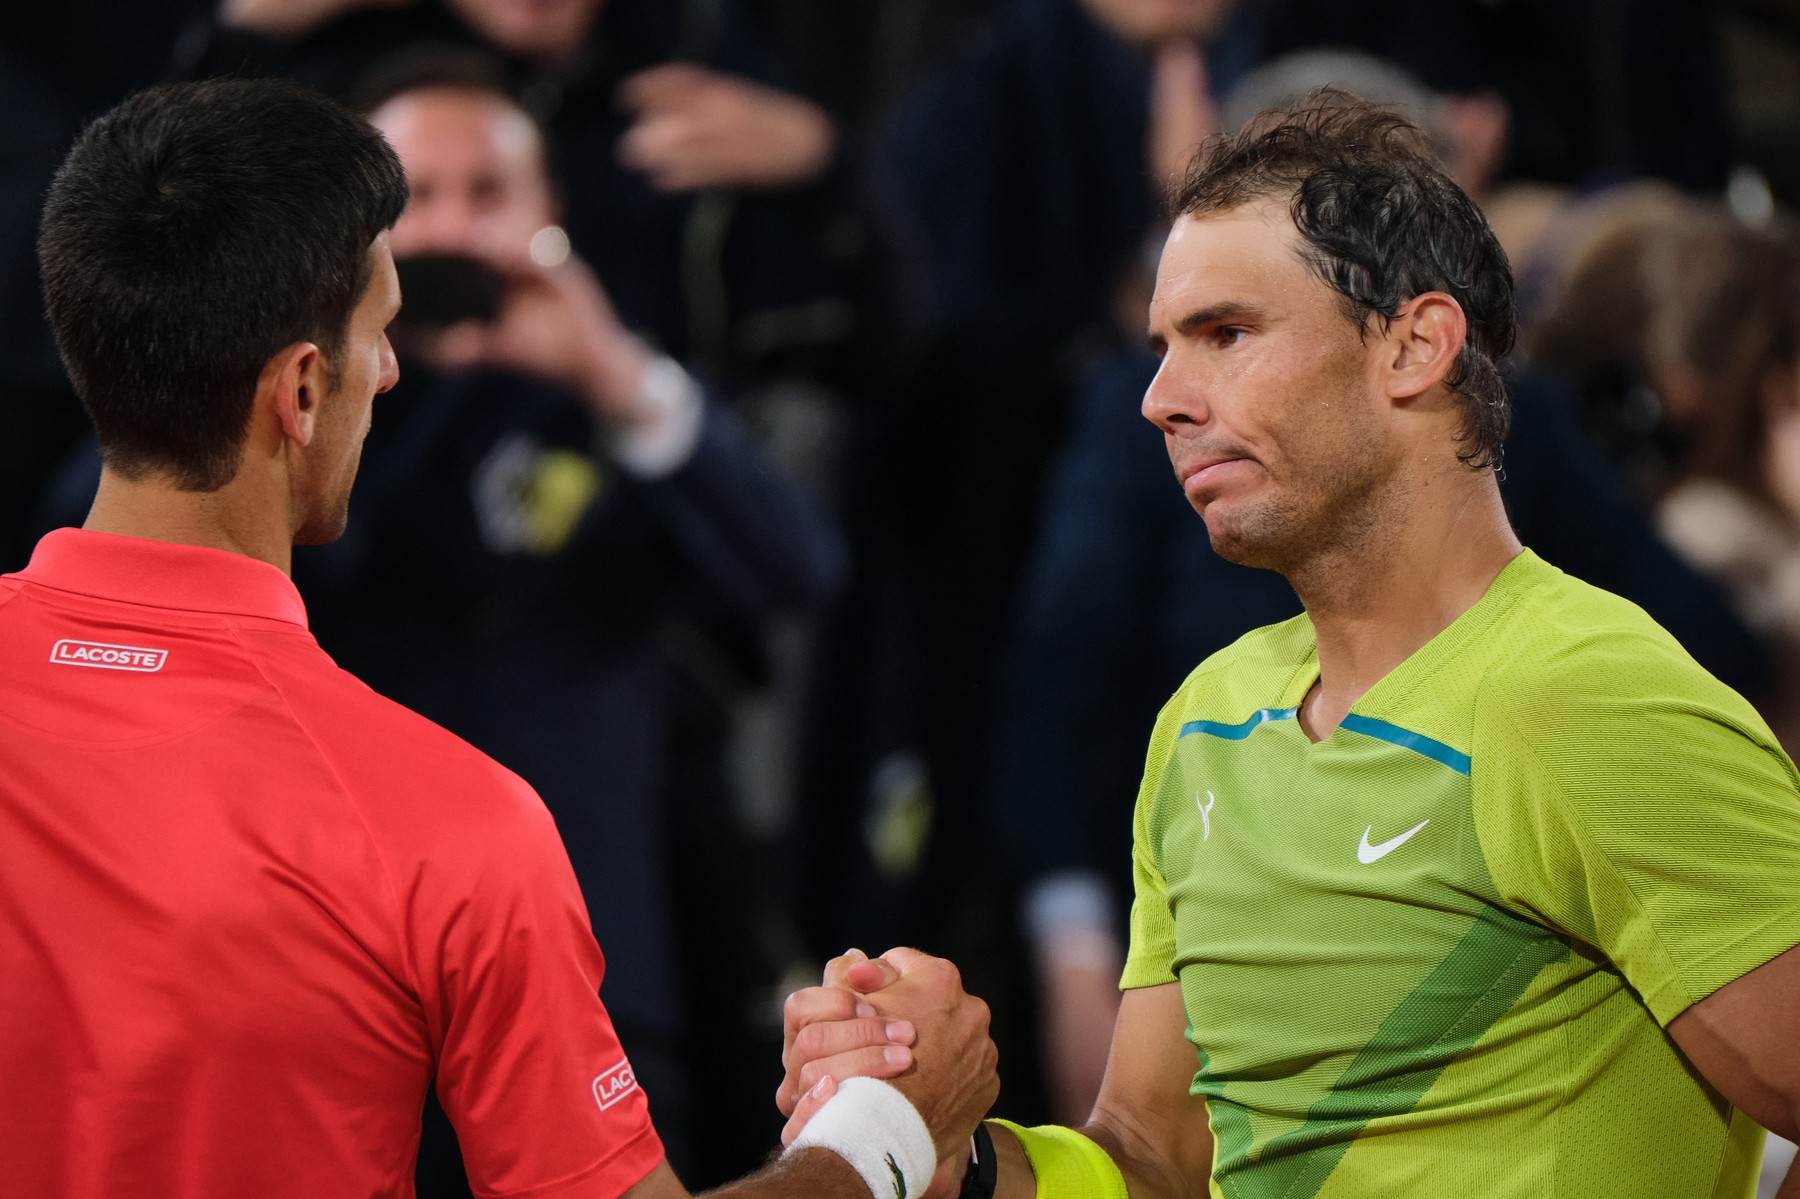  Rafael Nadal priznao da neće stići Novaka Đokovića po broju titula 